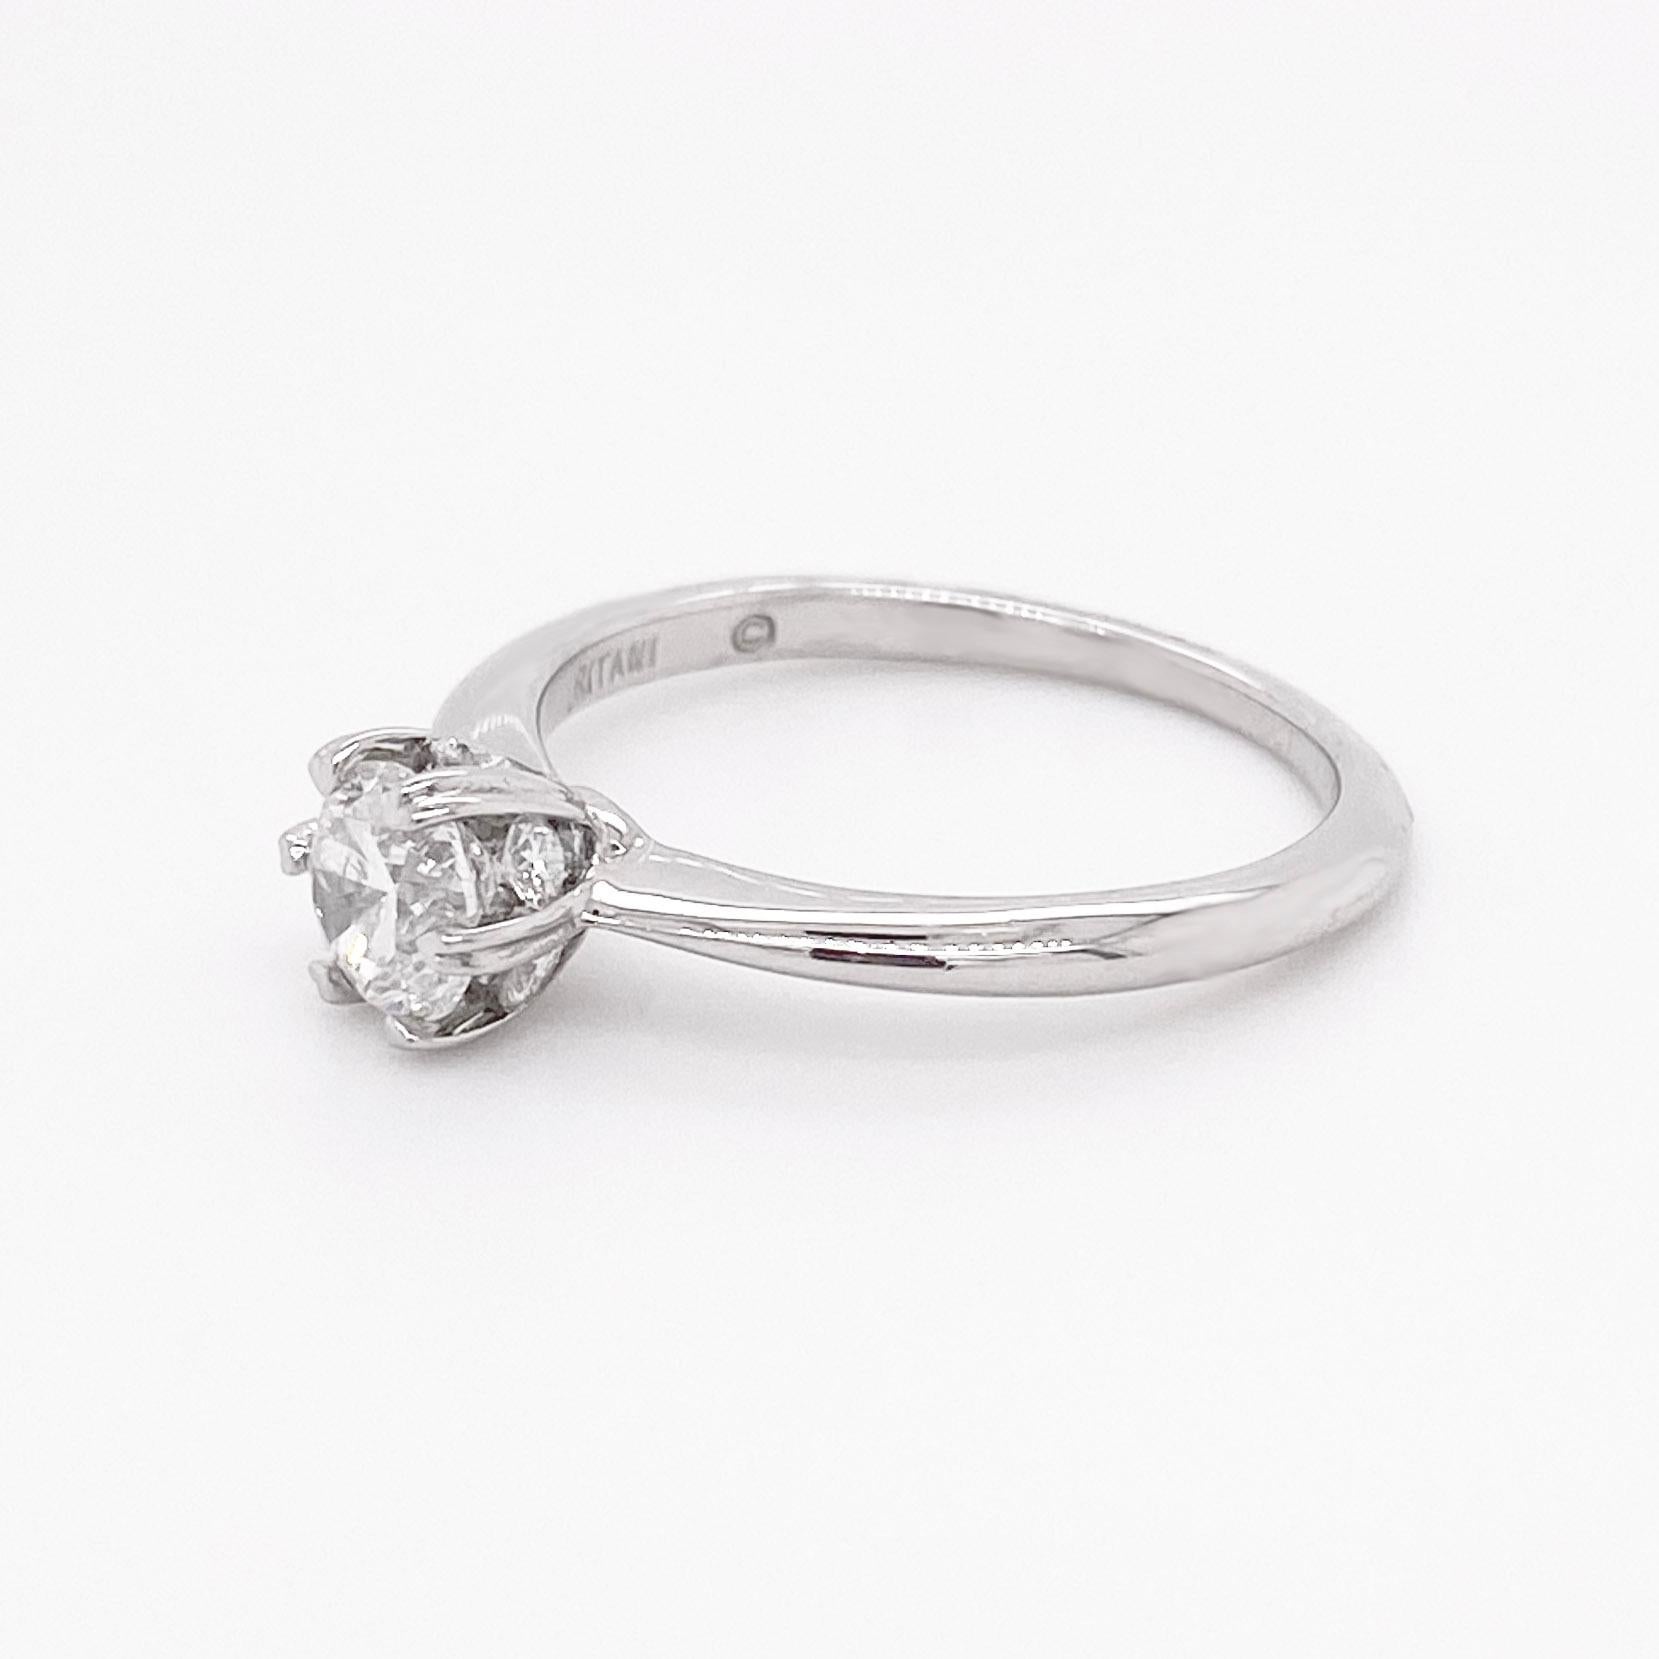 60 carat diamond ring price